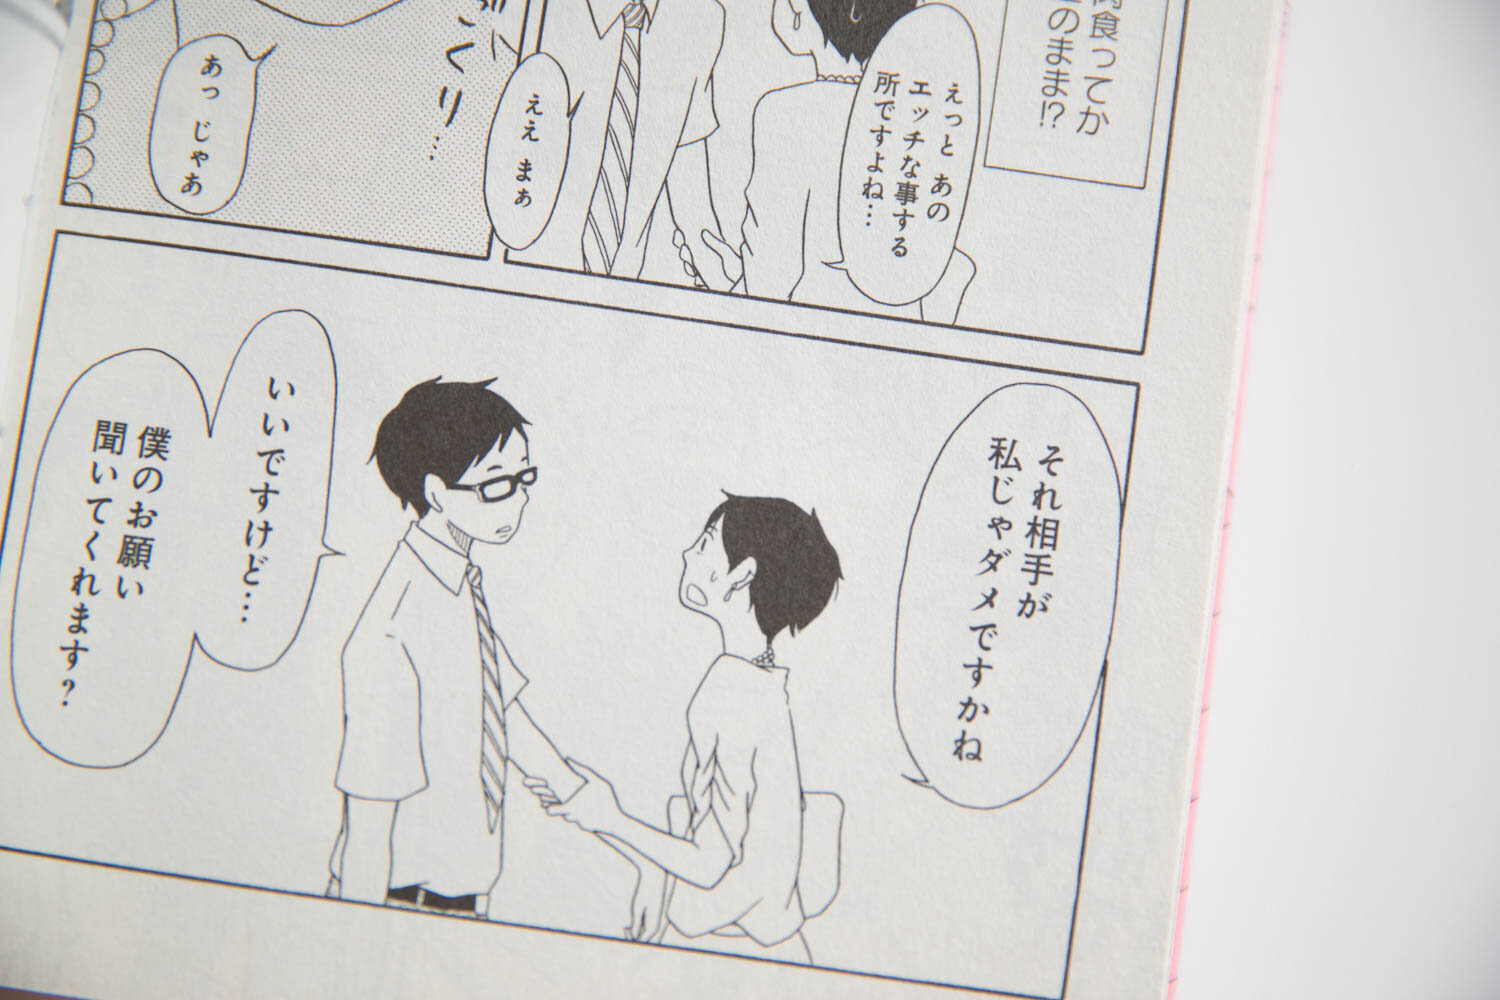 シモダアサミさんの漫画『mon*mon』